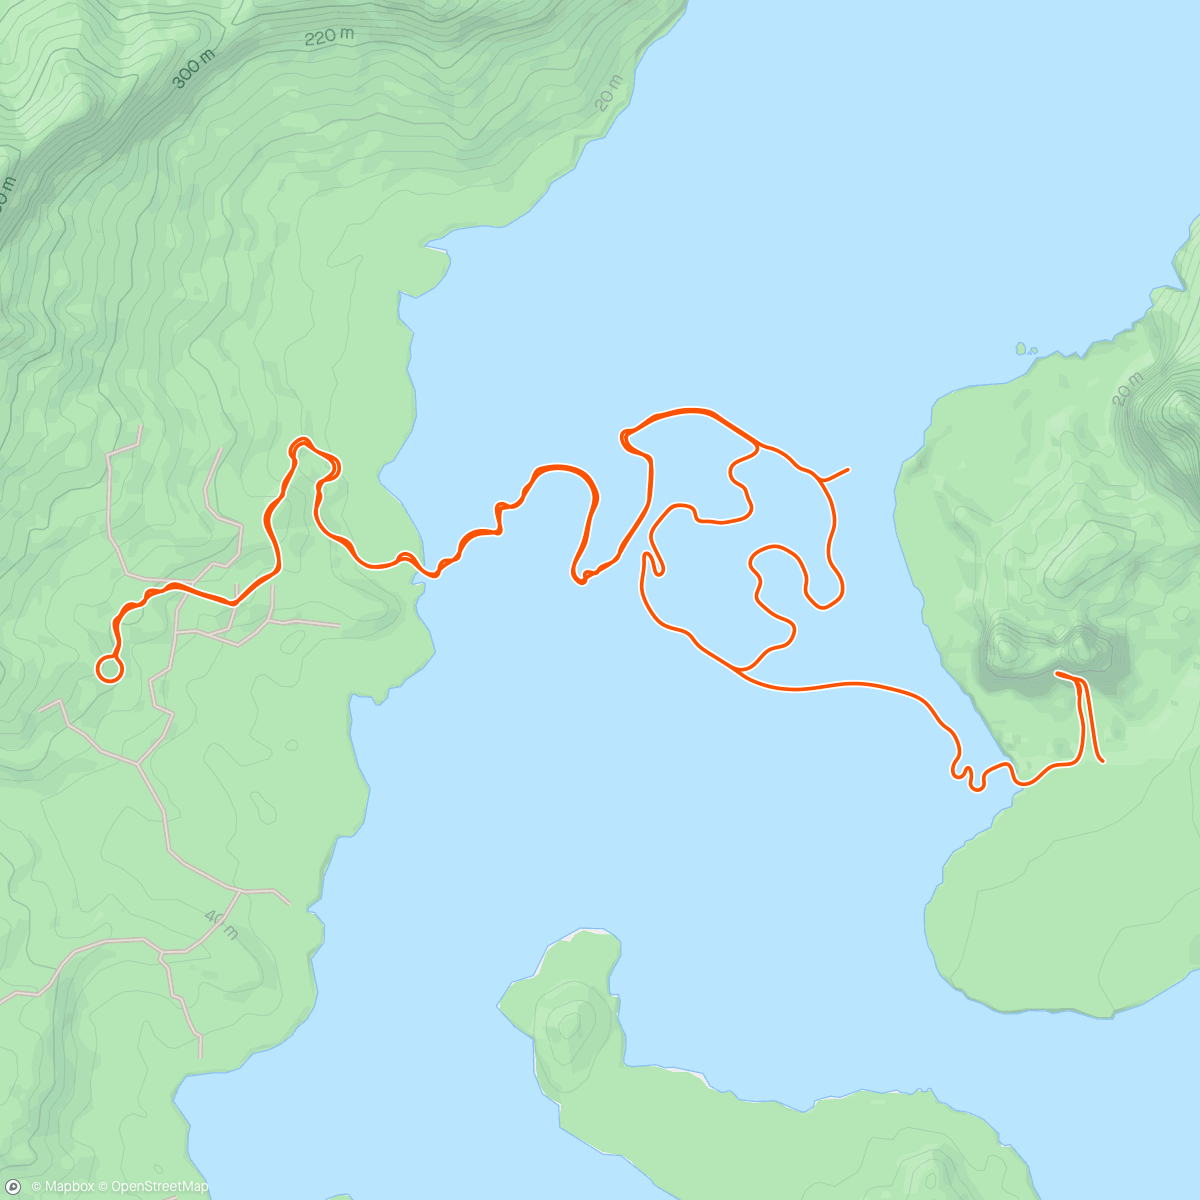 アクティビティ「Zwift - Climb Portal: Old La Honda at 100% Elevation in Watopia」の地図